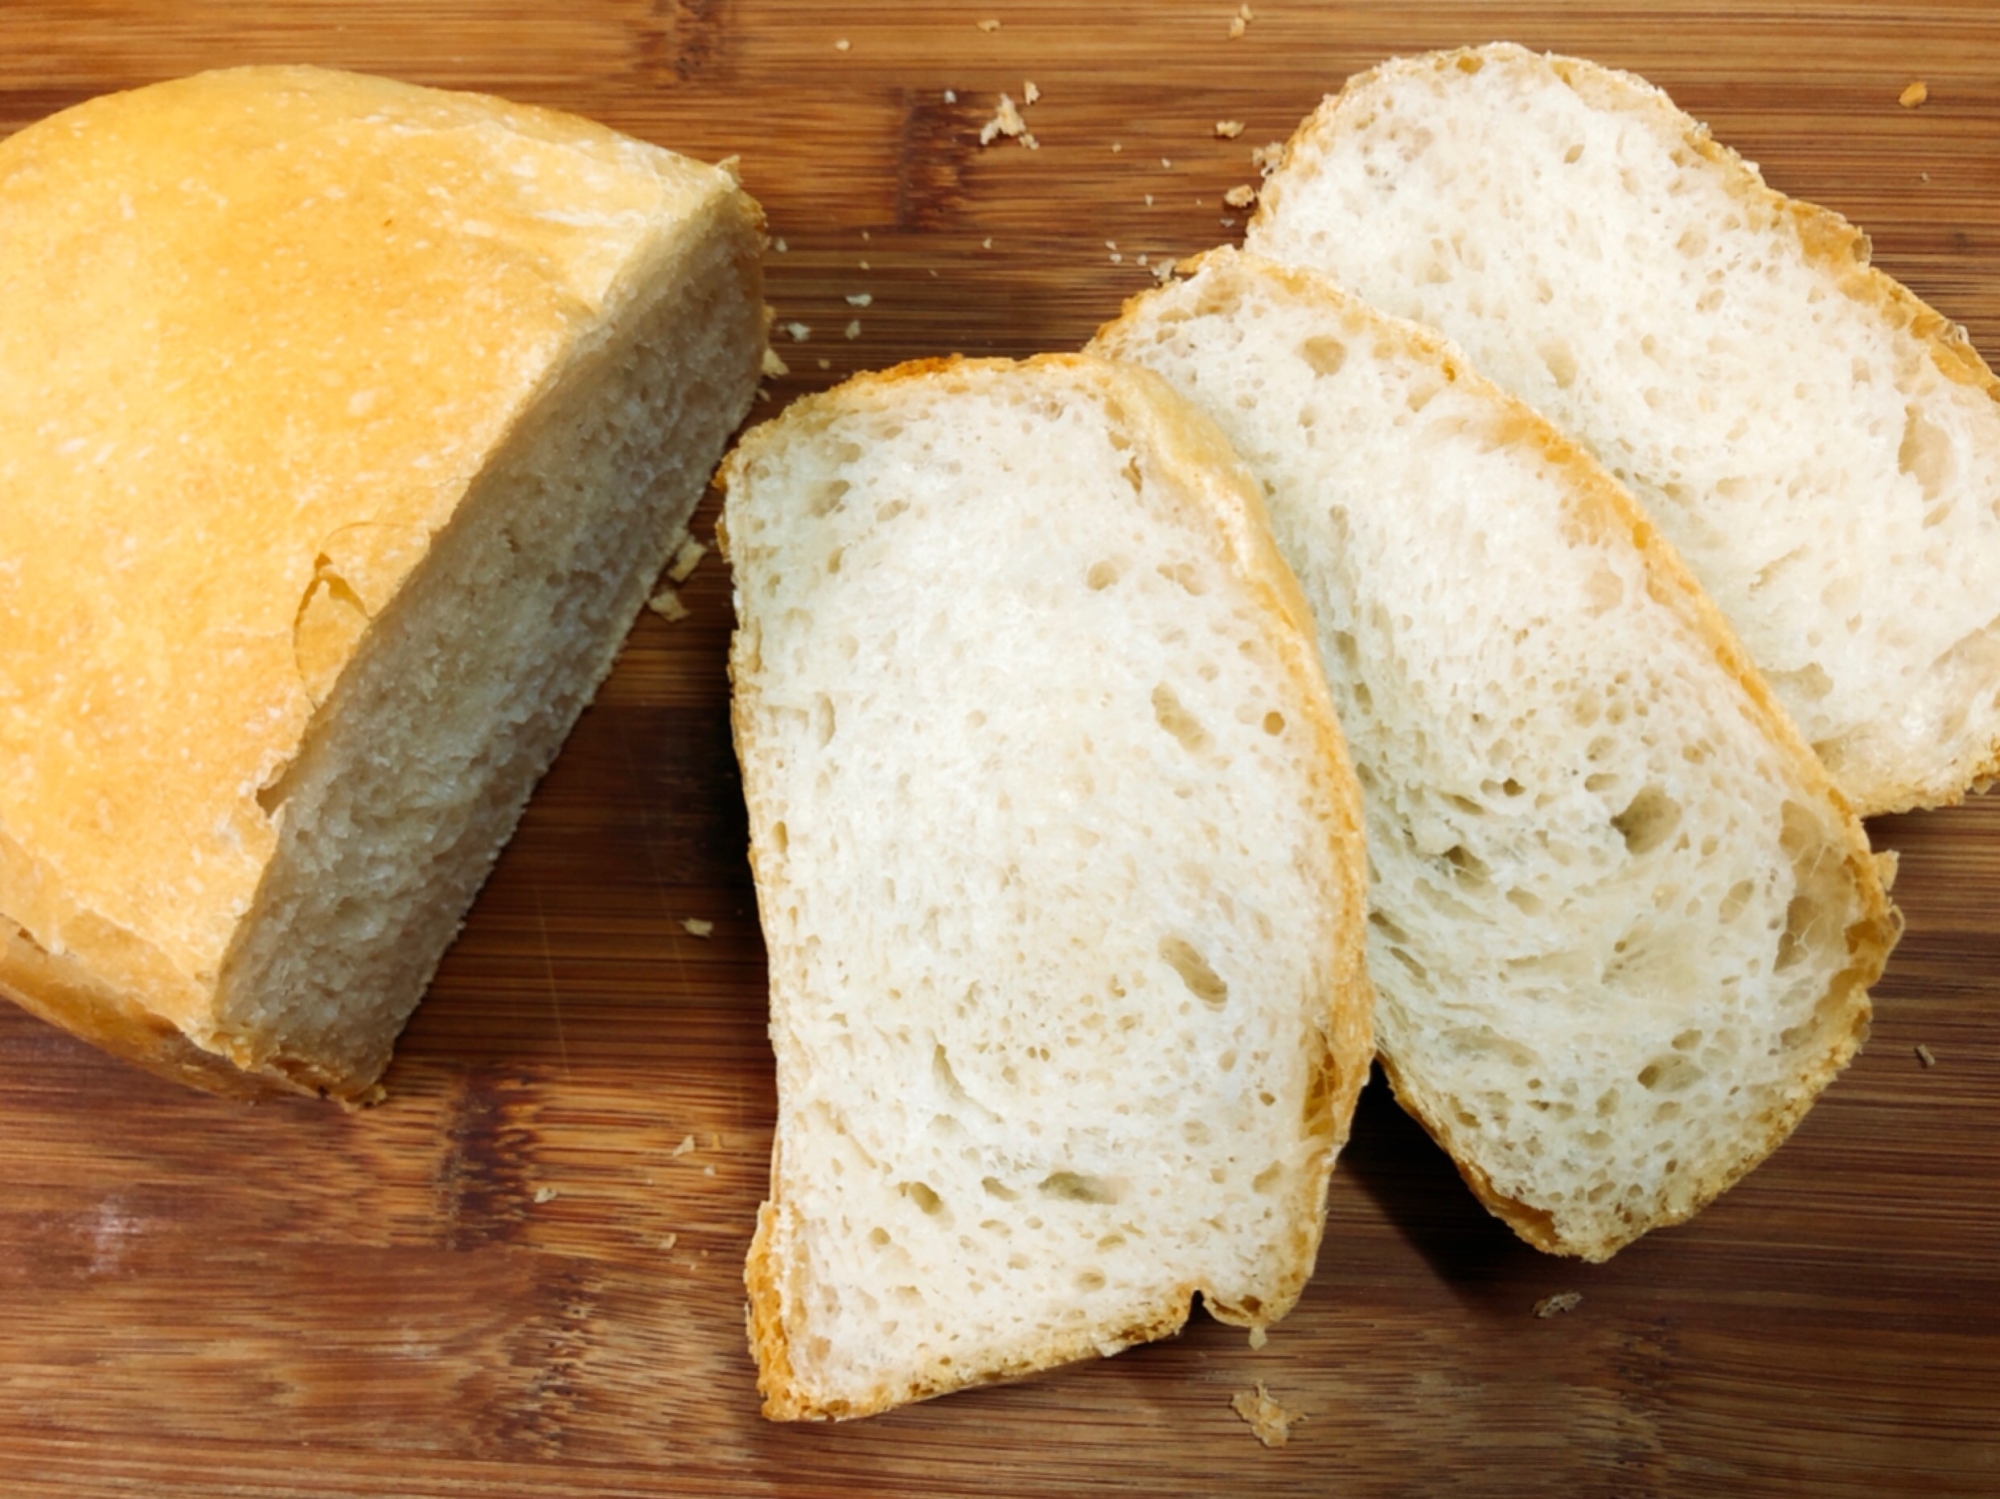 HBで半斤 おからパウダー入りのフランスパン